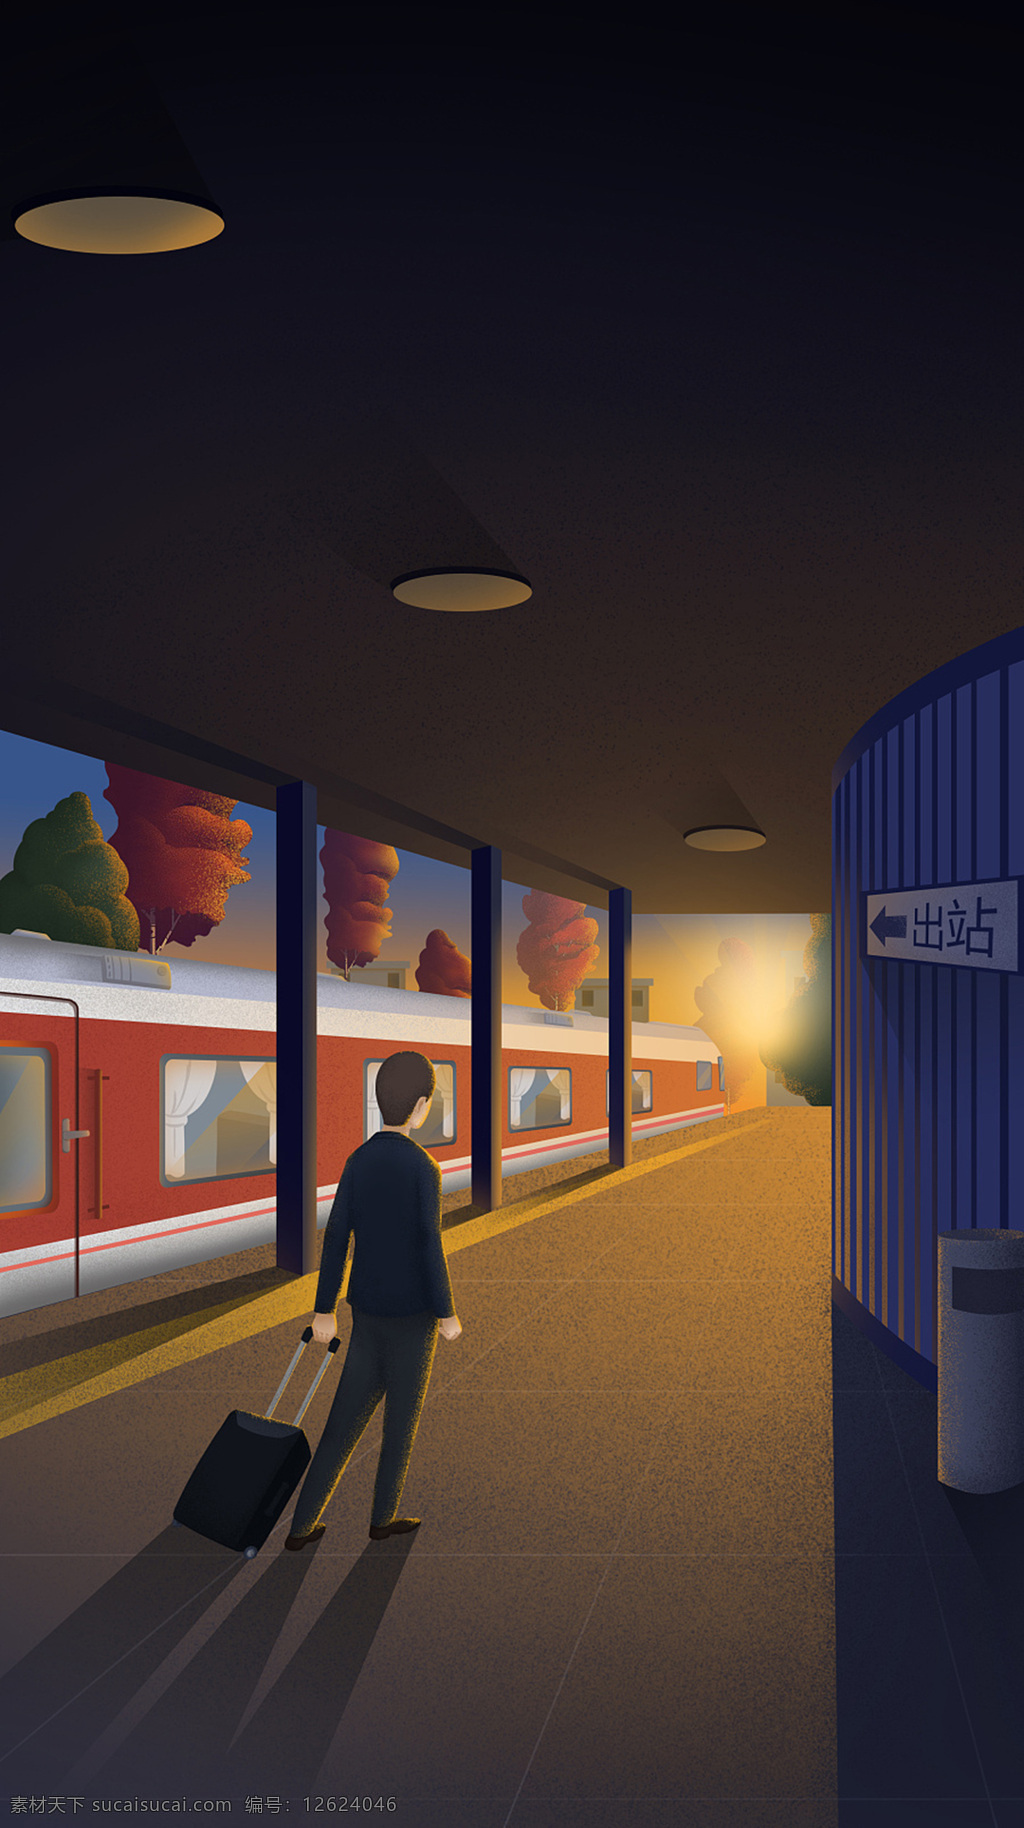 手绘 人物 出站 h5 背景 地铁站 出口 行李箱 h5背景 素 材